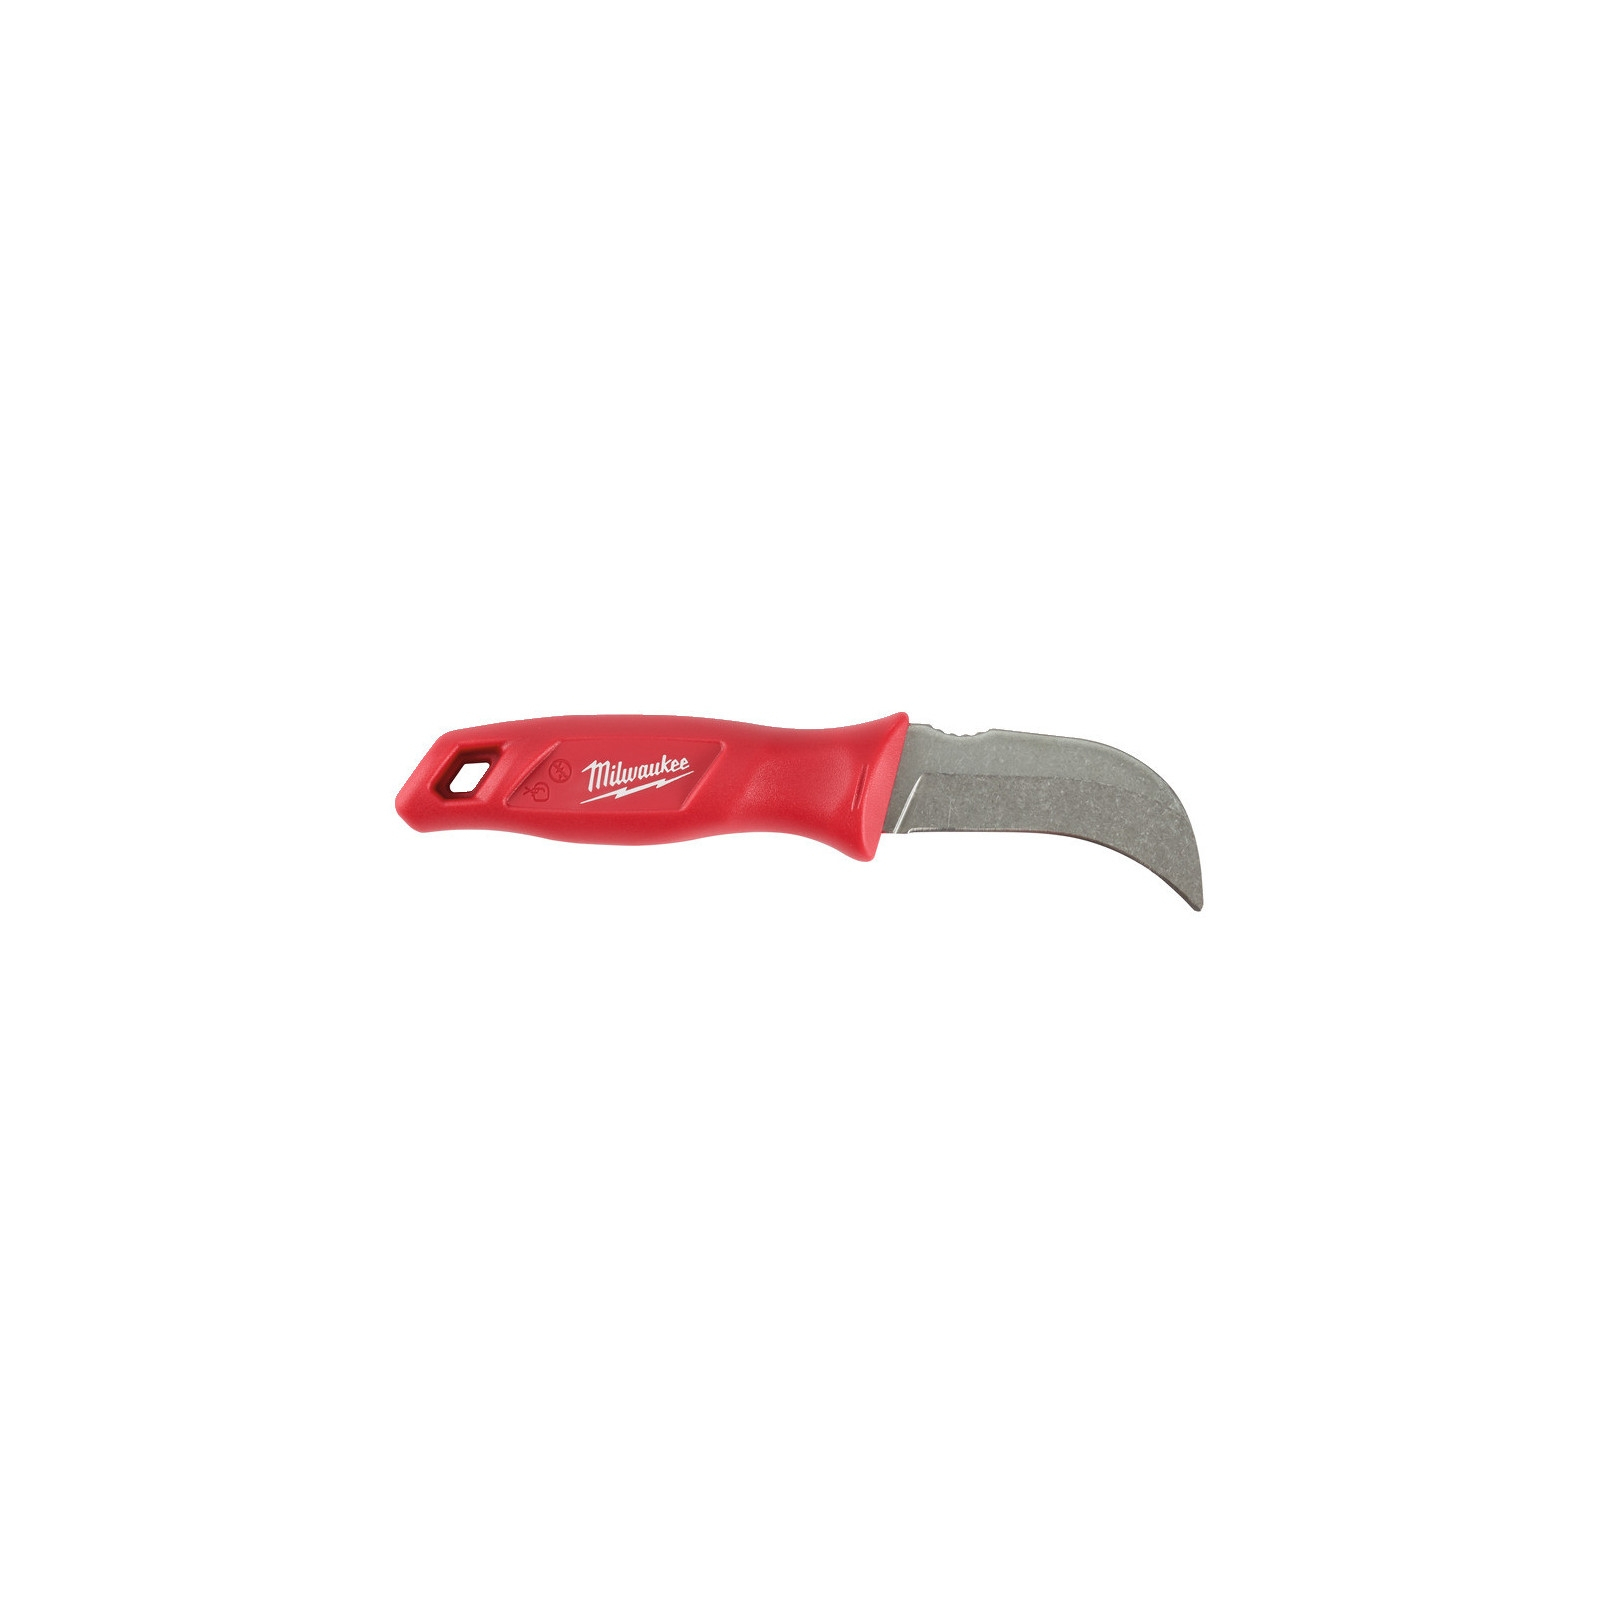 Нож монтажный Milwaukee строительный с фиксированным загнутым лезвием, для кабеля (4932464829)